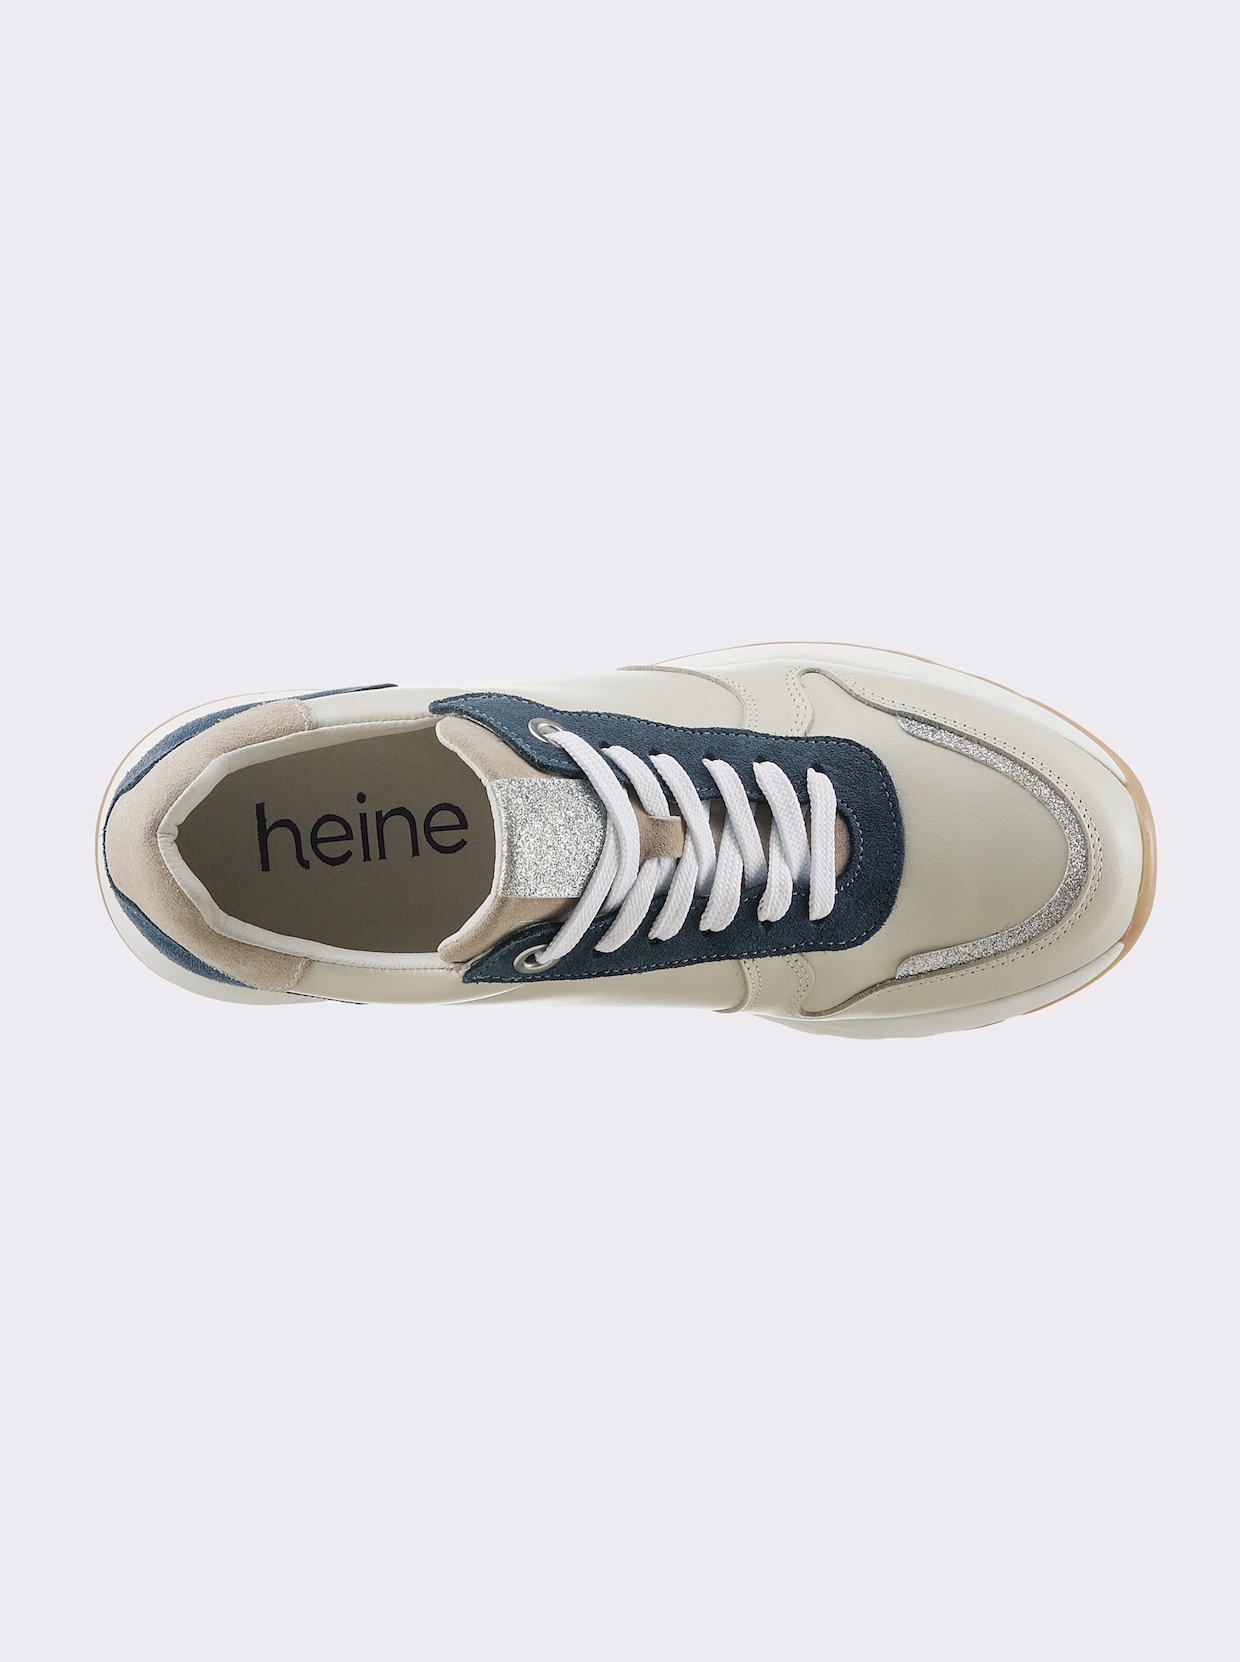 heine Sneaker - beige-blau